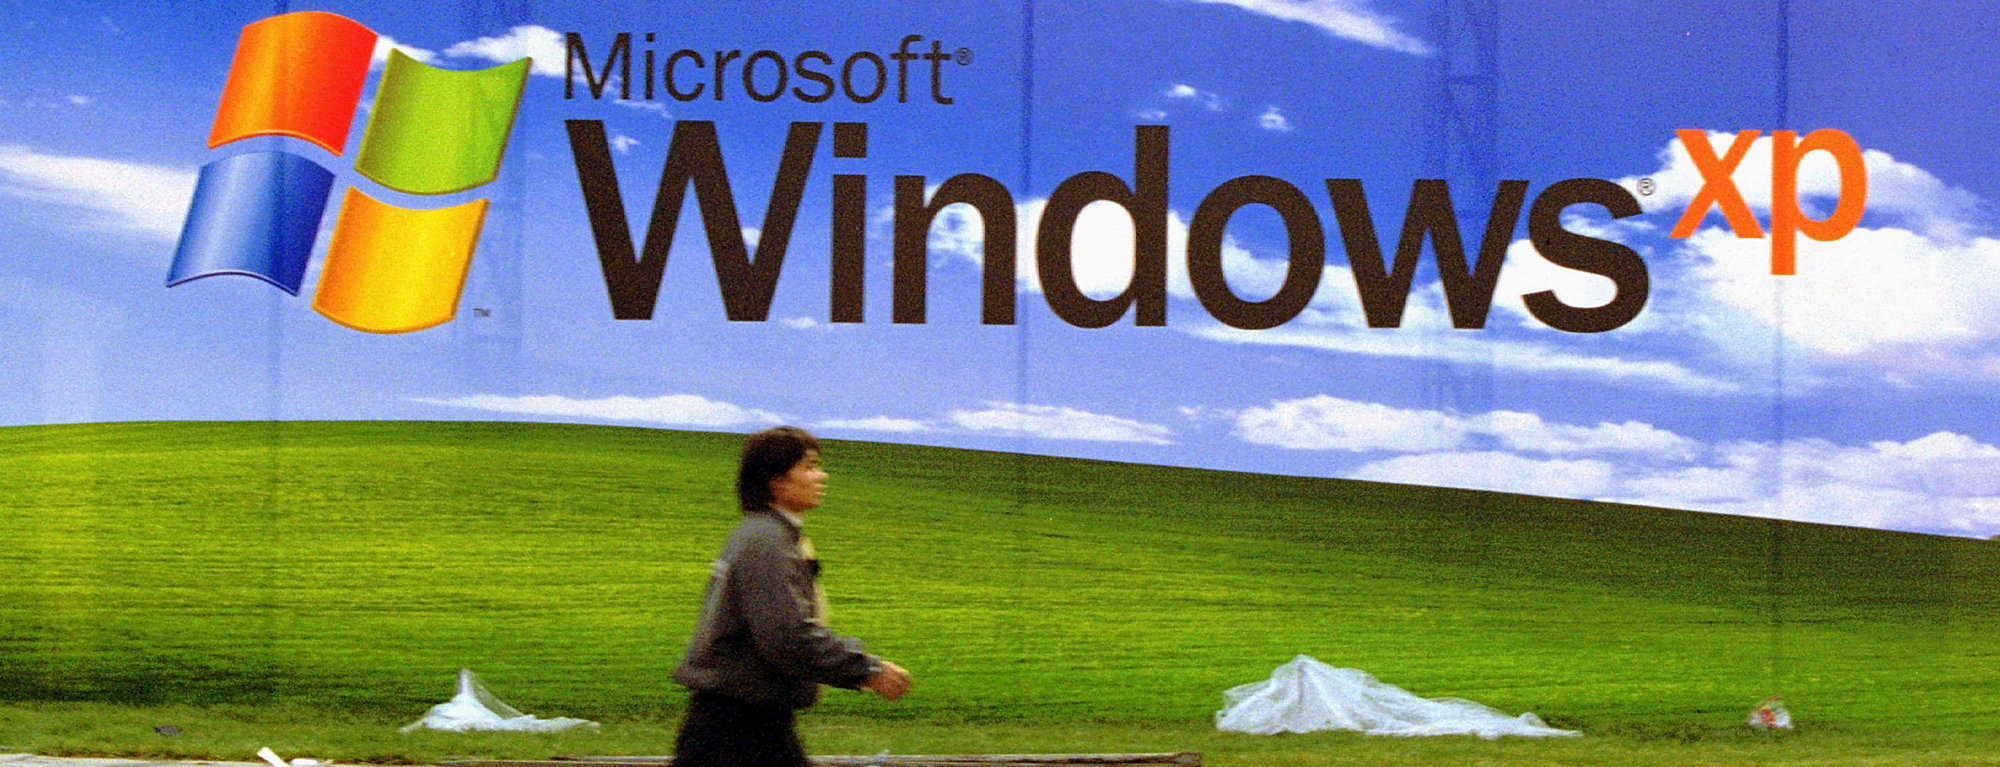 Windows XP End of Support đánh dấu một kỷ nguyên của hệ điều hành Windows. Tuy nhiên, chúng ta vẫn còn thể sử dụng các phần mềm và tính năng mà nó mang lại. Hãy cùng tìm hiểu và khám phá thế giới của Windows XP End of Support.